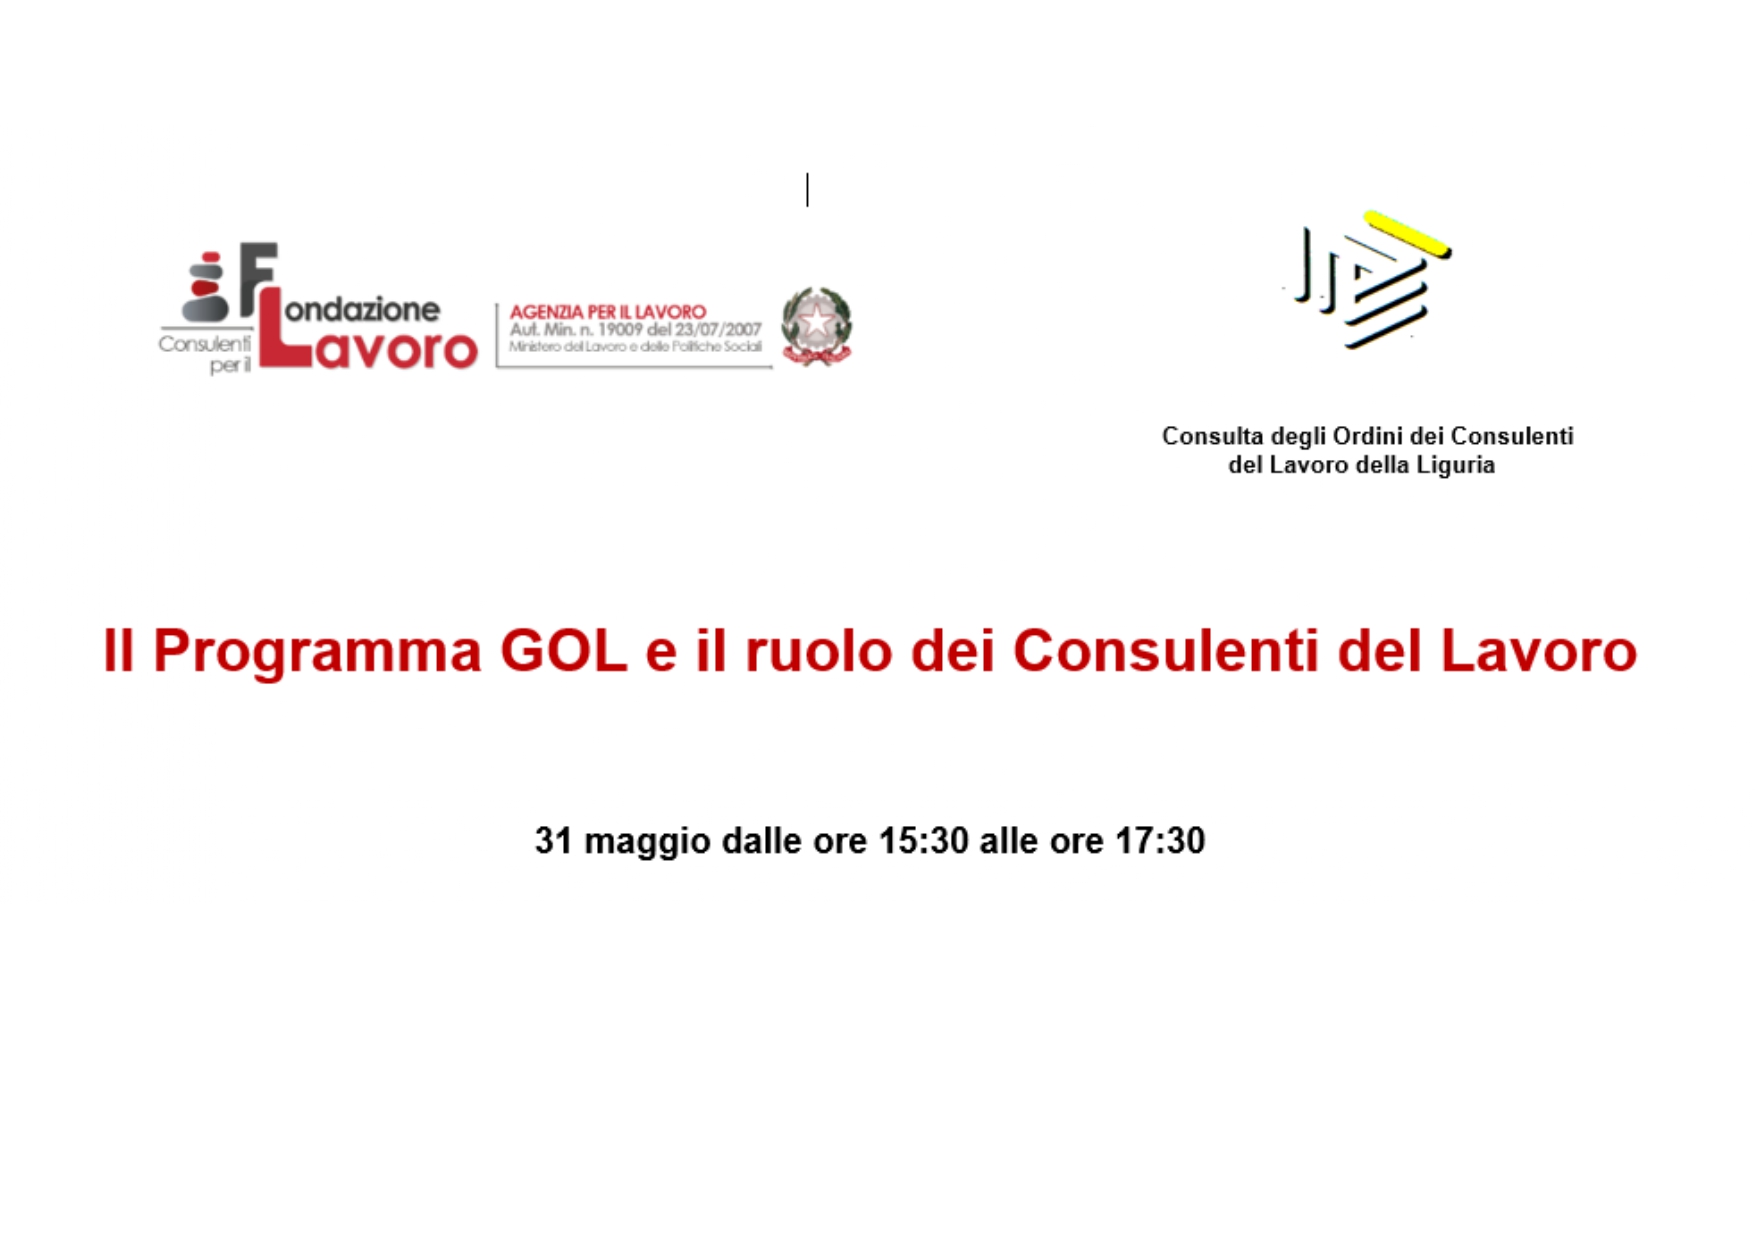 Convegno: "Il Programma GOL e il ruolo dei Consulenti del Lavoro" . Webinar Liguria